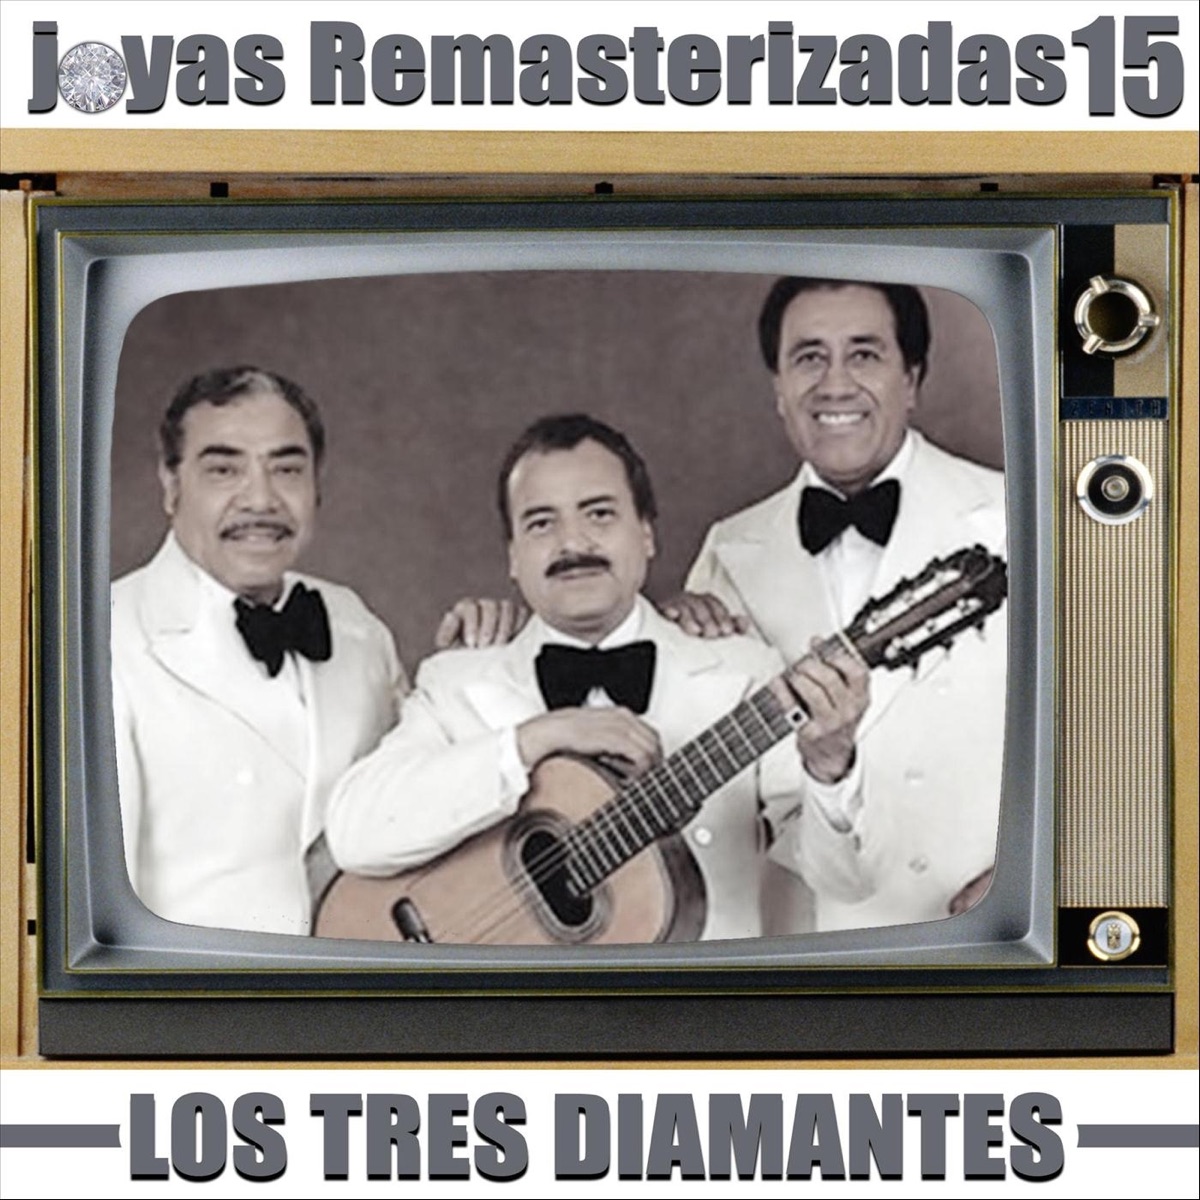 Los Tres Diamantes - Solo Boleros by Los Tres Diamantes on Apple Music